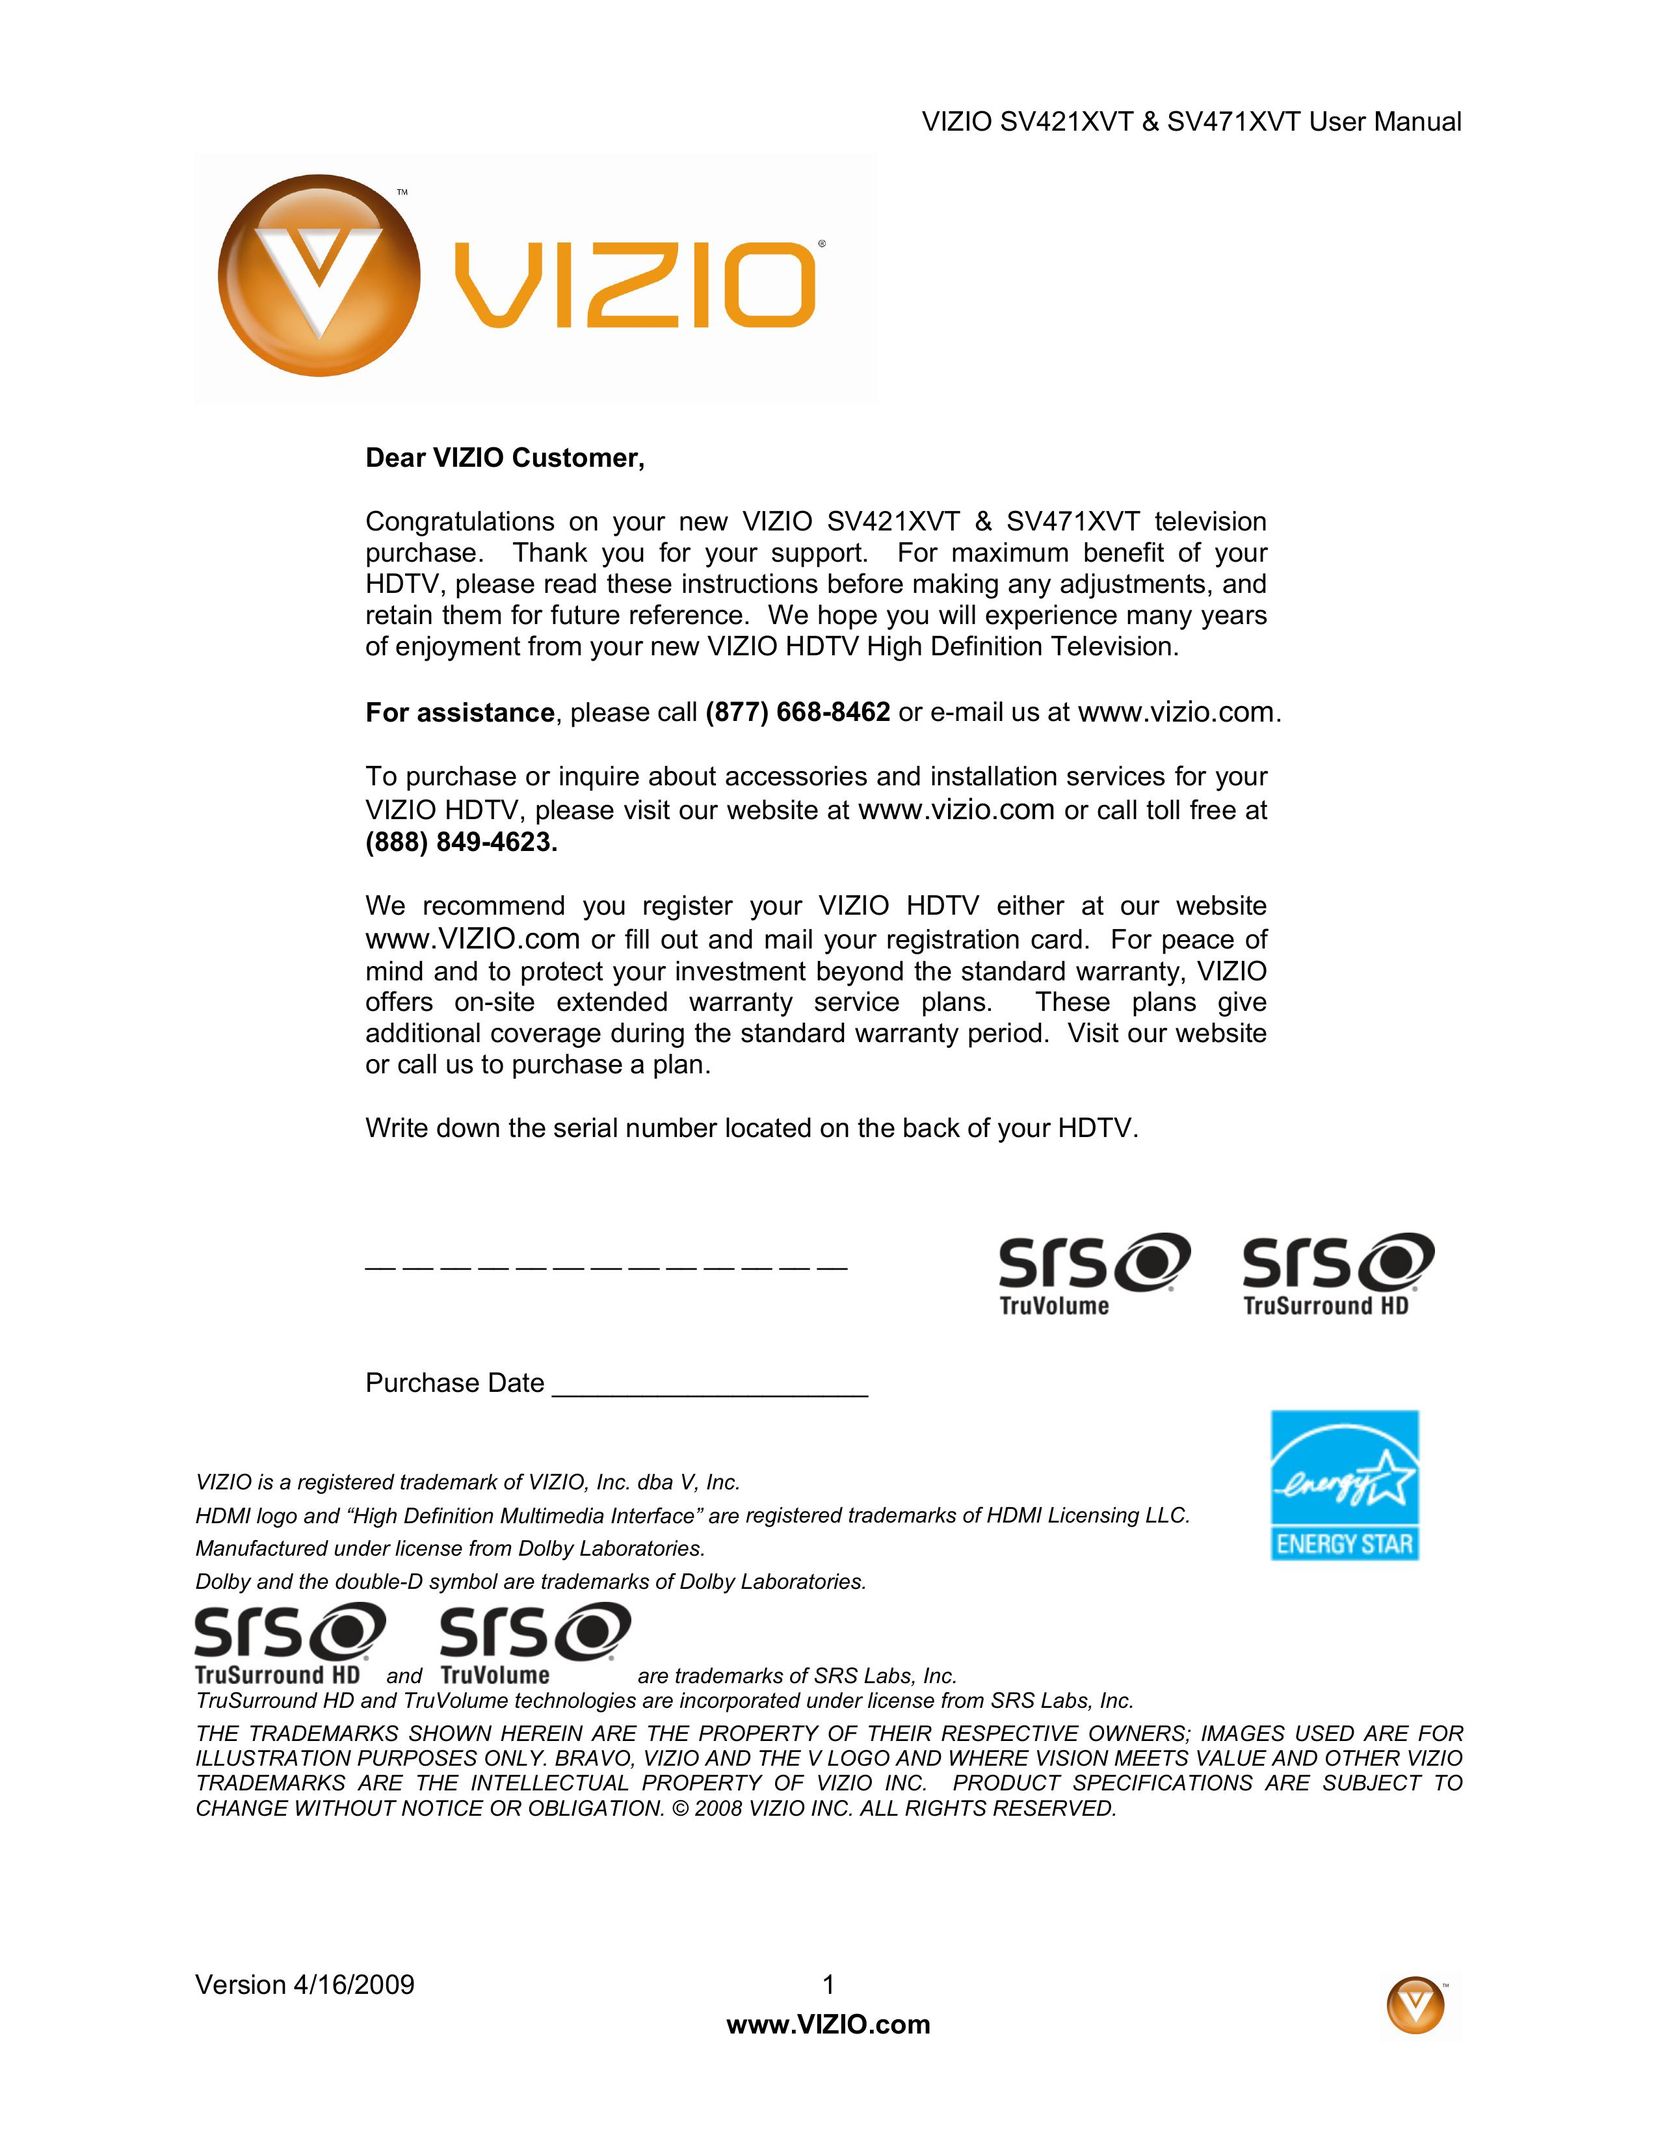 Vizio SV421XVT Car Satellite TV System User Manual